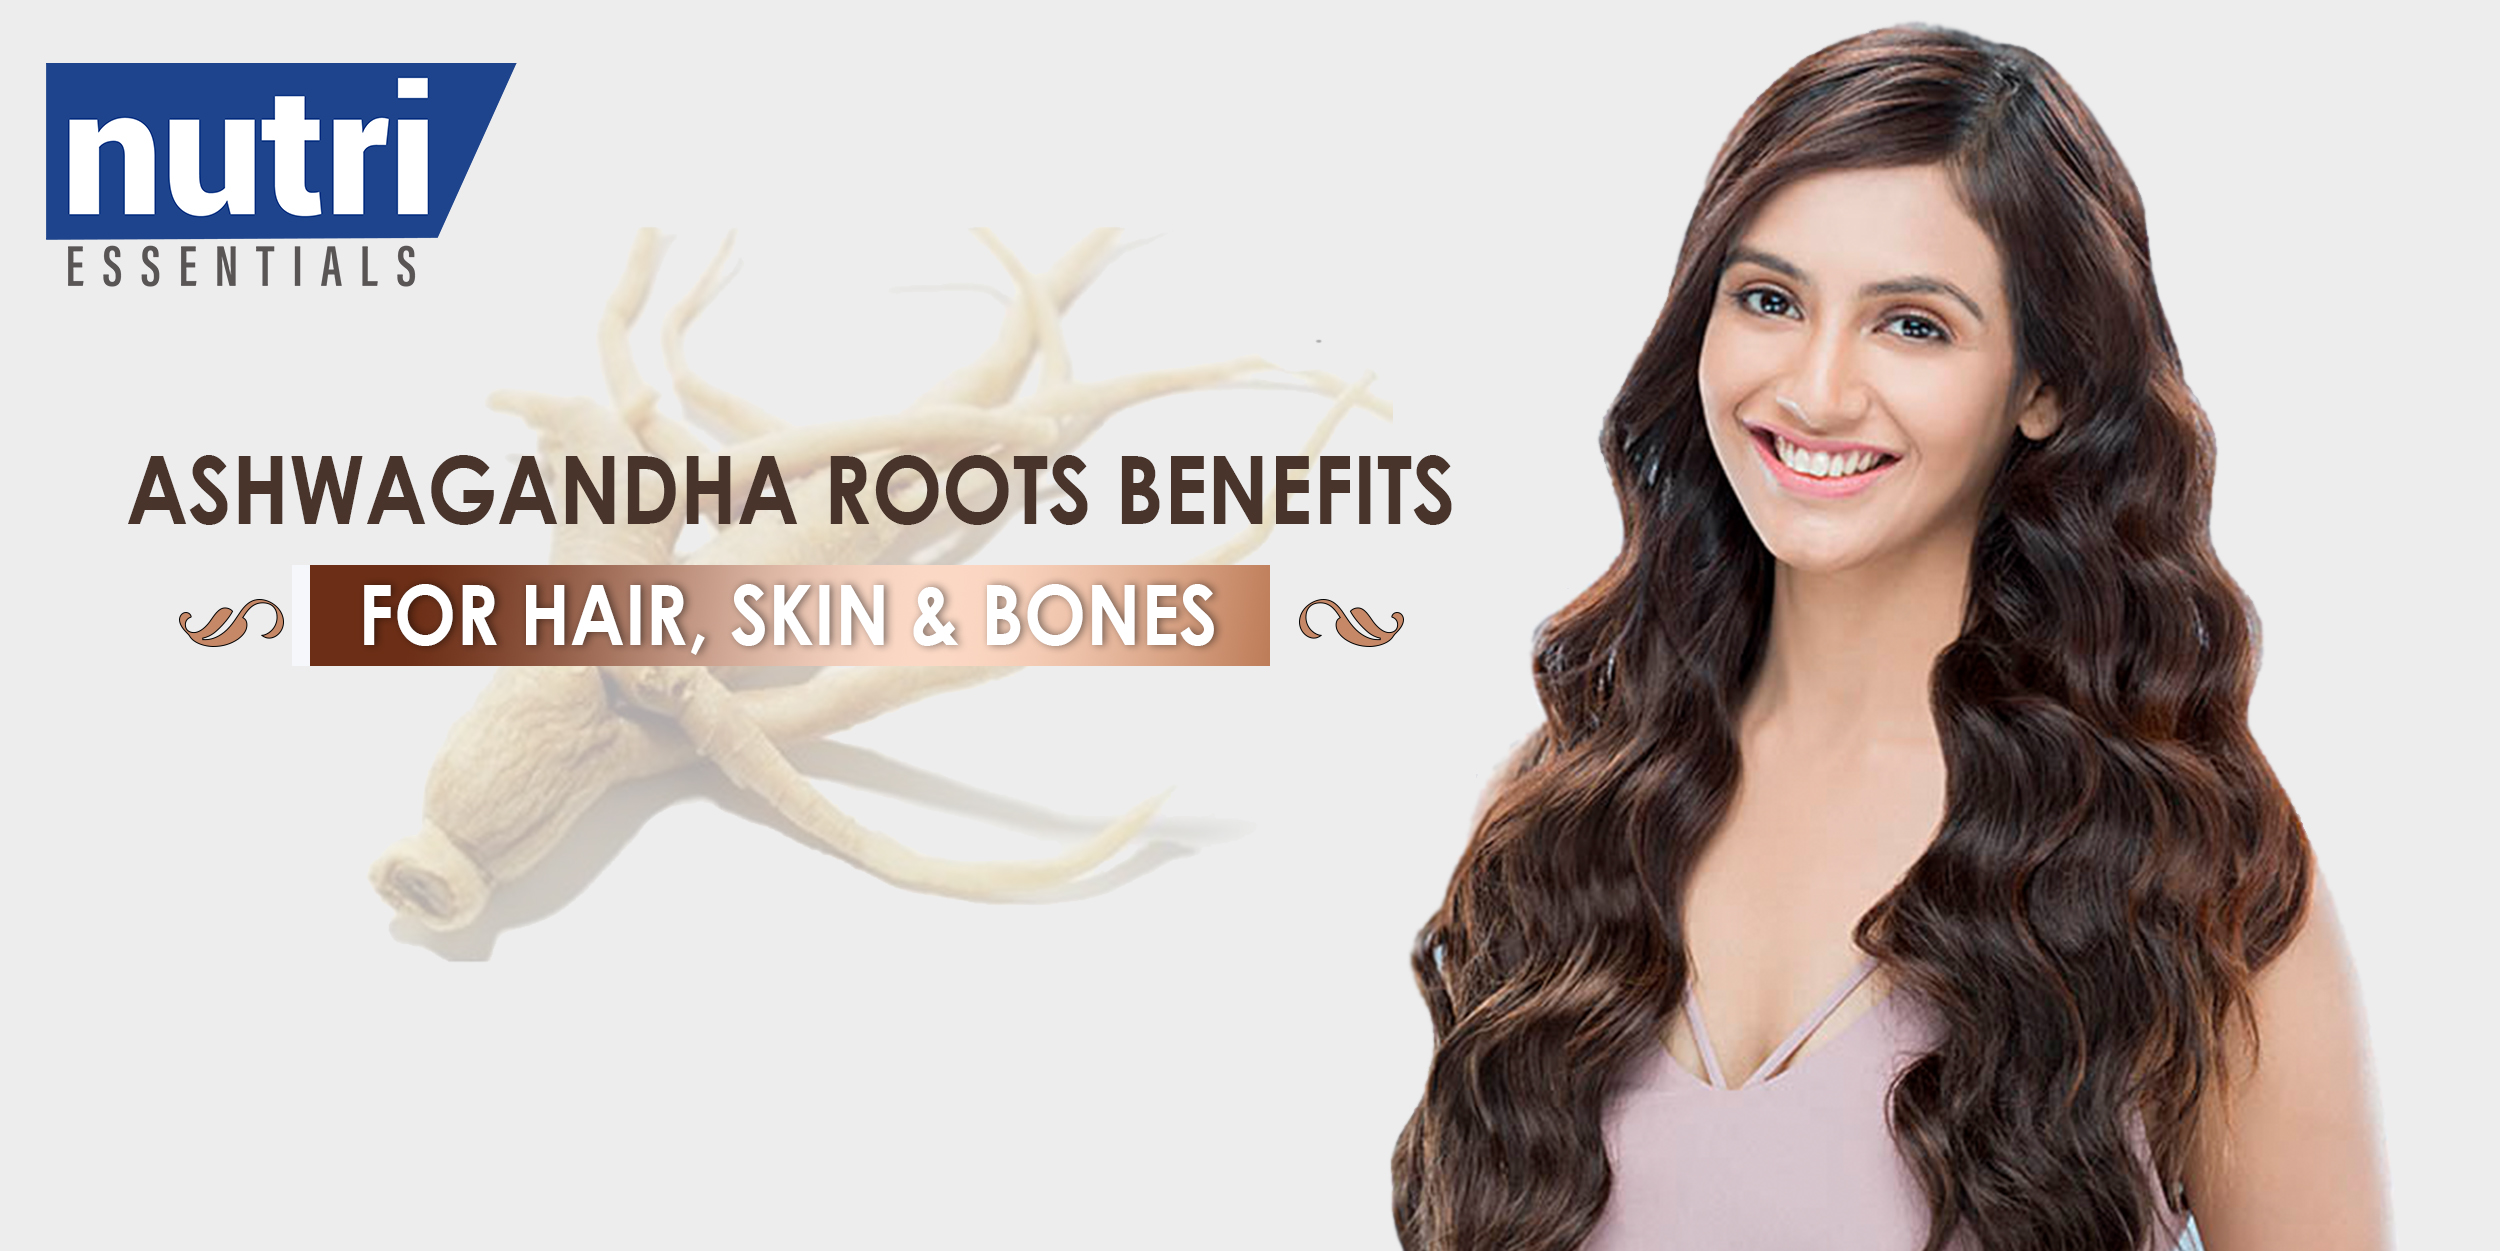 Ashwagandha Roots Benefits for Hair, Skin & Bones